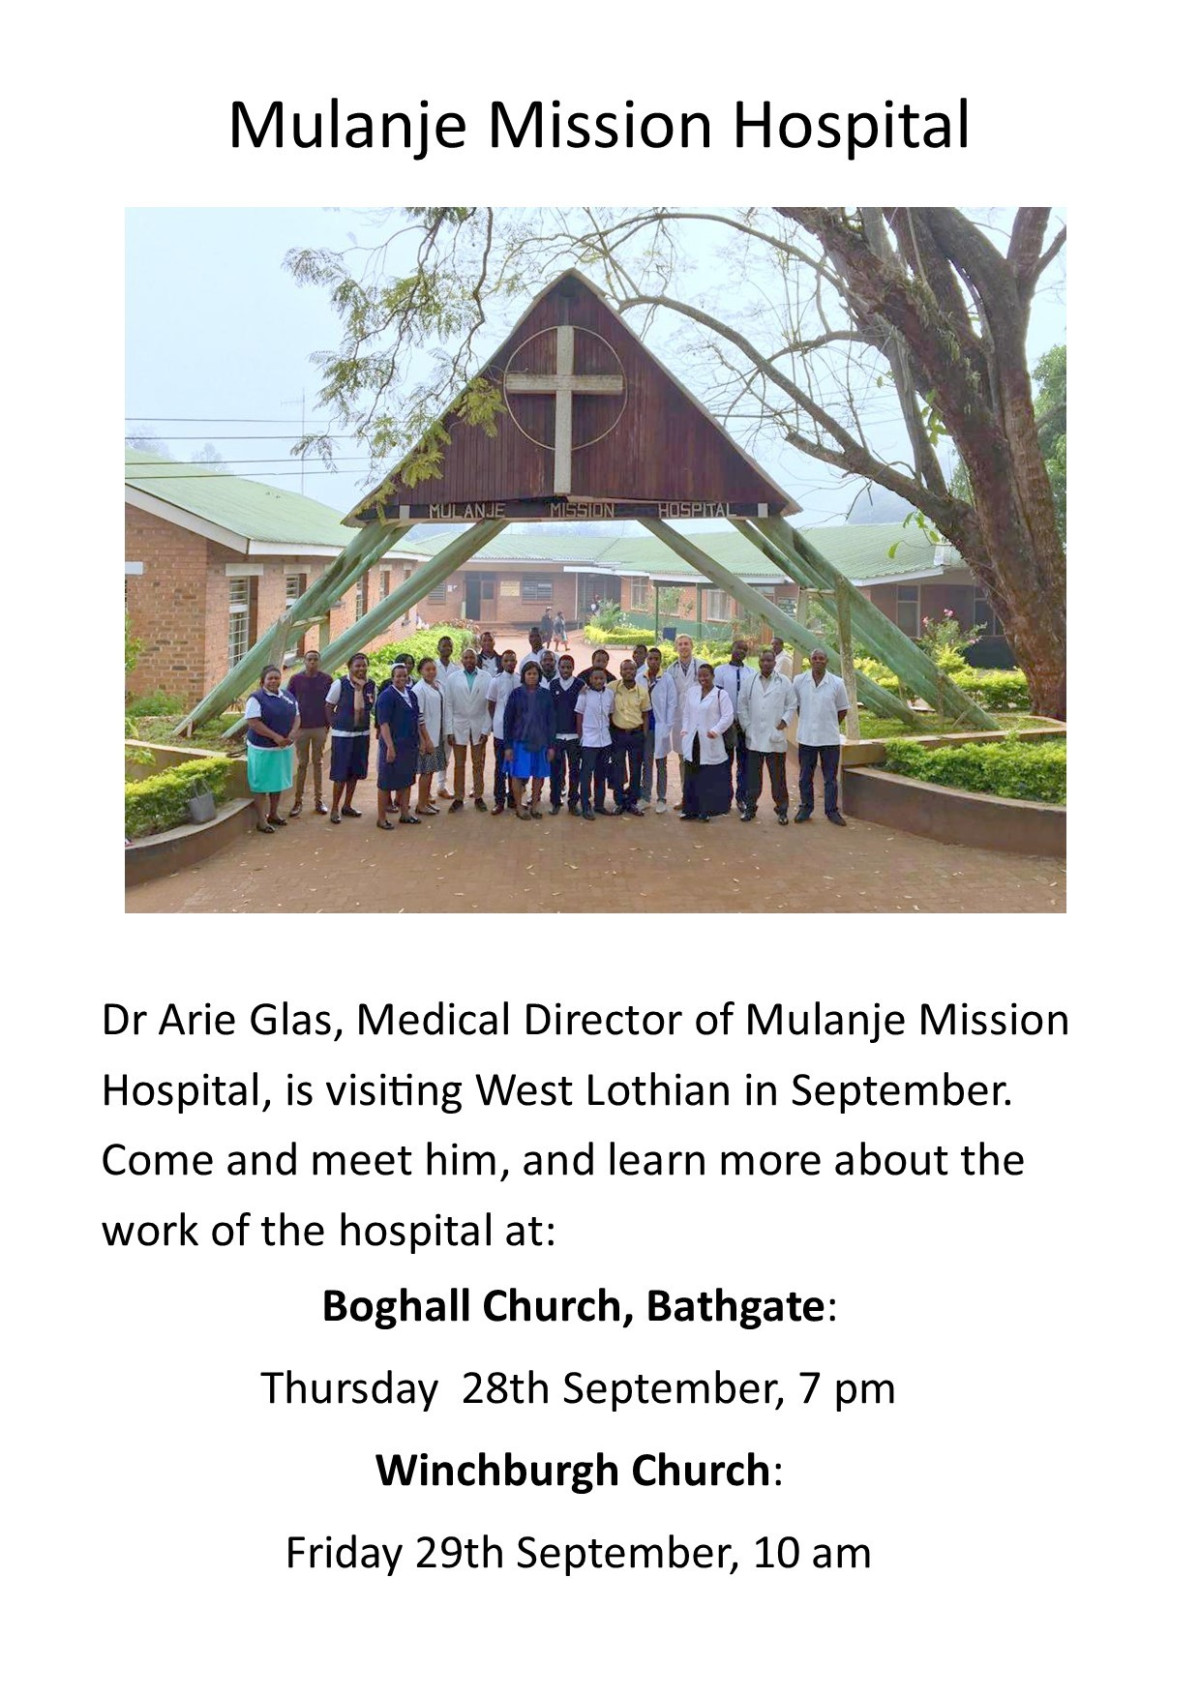 Dr. Glas, Medical Director of Mulanje Mission Hospital, Malawi, visit